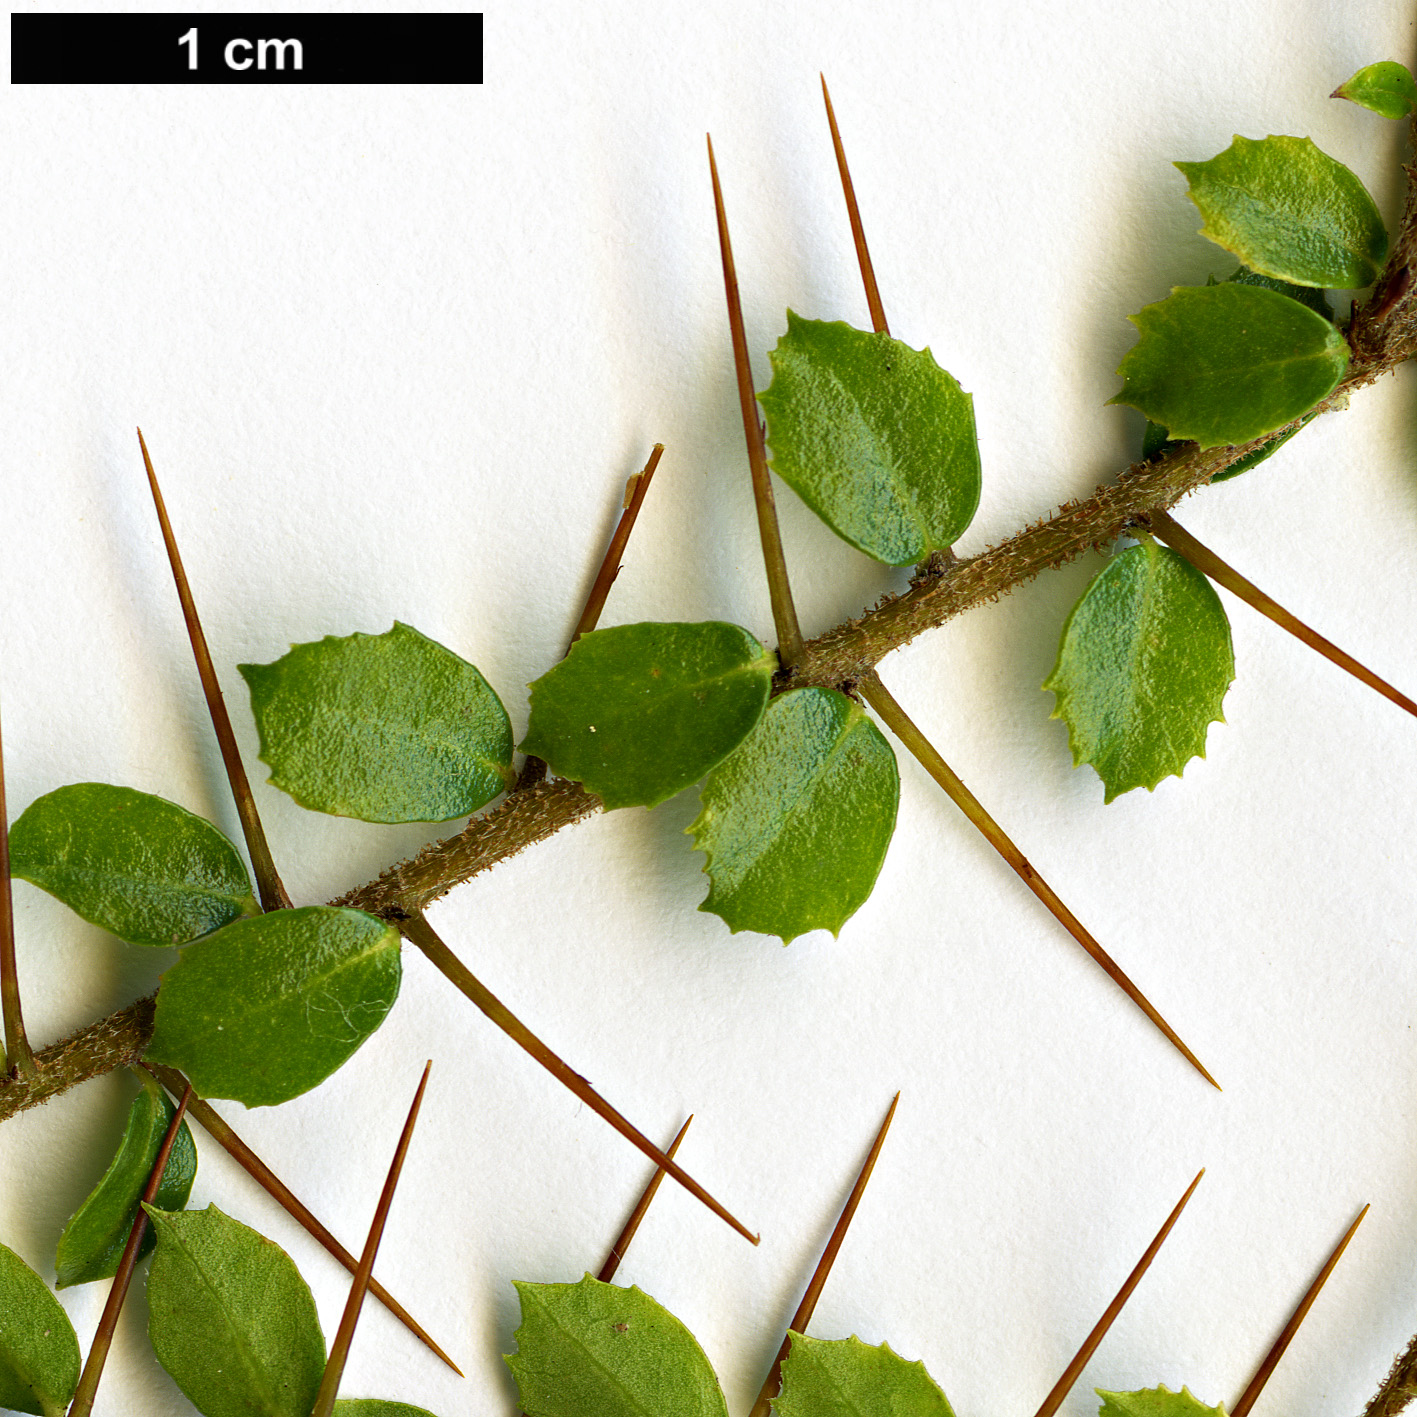 High resolution image: Family: Pittosporaceae - Genus: Pittosporum - Taxon: multiflorum